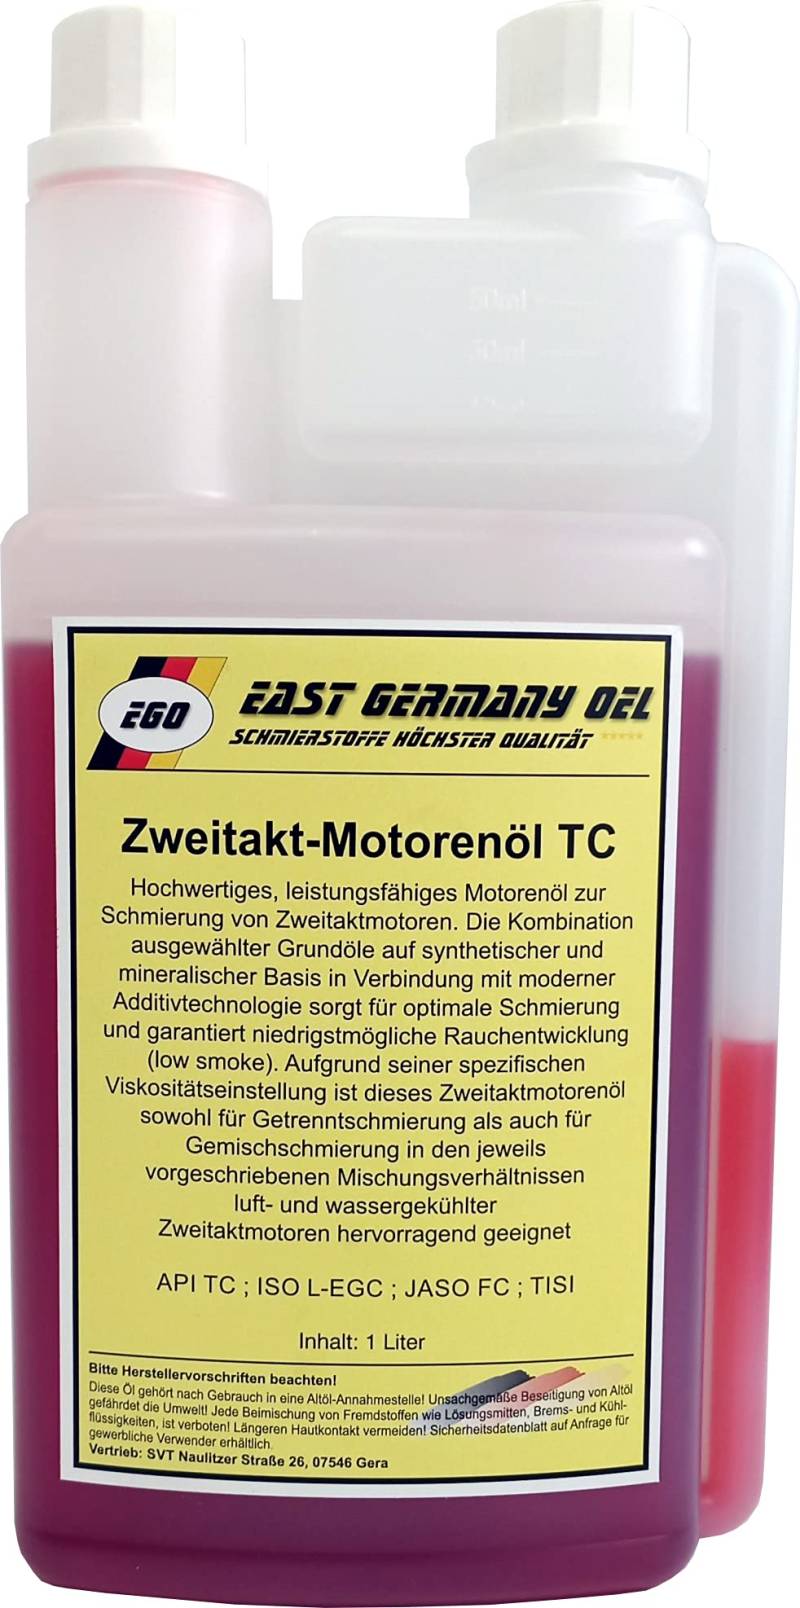 Zweitaktöl Teilsyn. für Rasenmäher,Motorsäge,Motorsense uvm. 1 Liter Dosier Flasche_AB von East Germany OIL